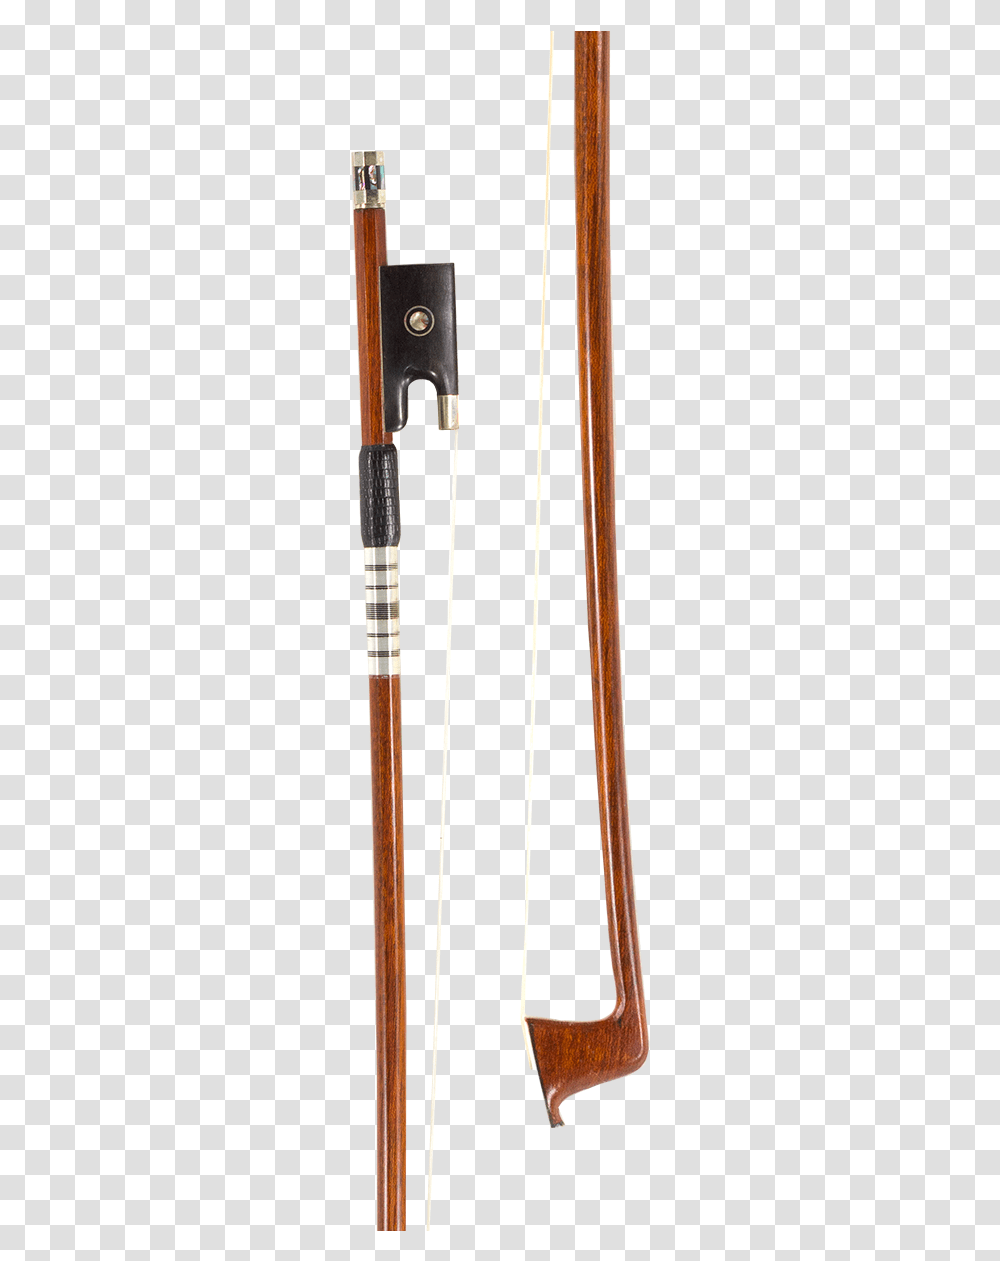 Carbon Fiber Violin Bow Size 12 14 4 Cue Stick, Oars, Arrow, Weapon Transparent Png